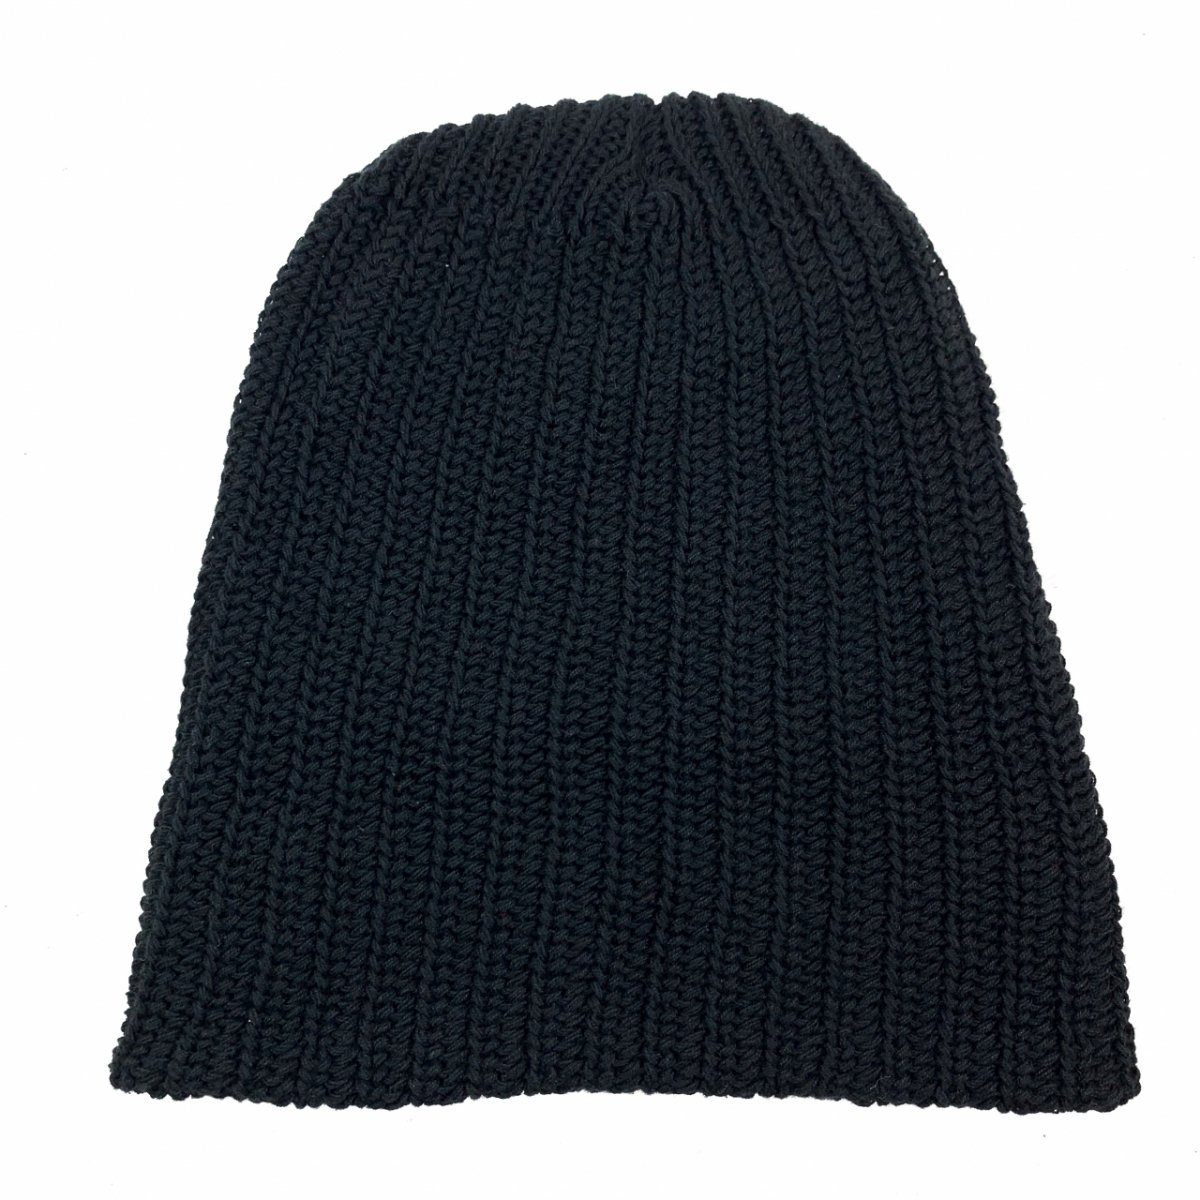 新品 USA製 COLUMBIA KNIT Cotton Short Knit Cap (BLACK) コロンビアニット コットンニットキャップ  ニット帽 ショートタイプ 黒 ブラック - NEWJOKE ONLINE STORE